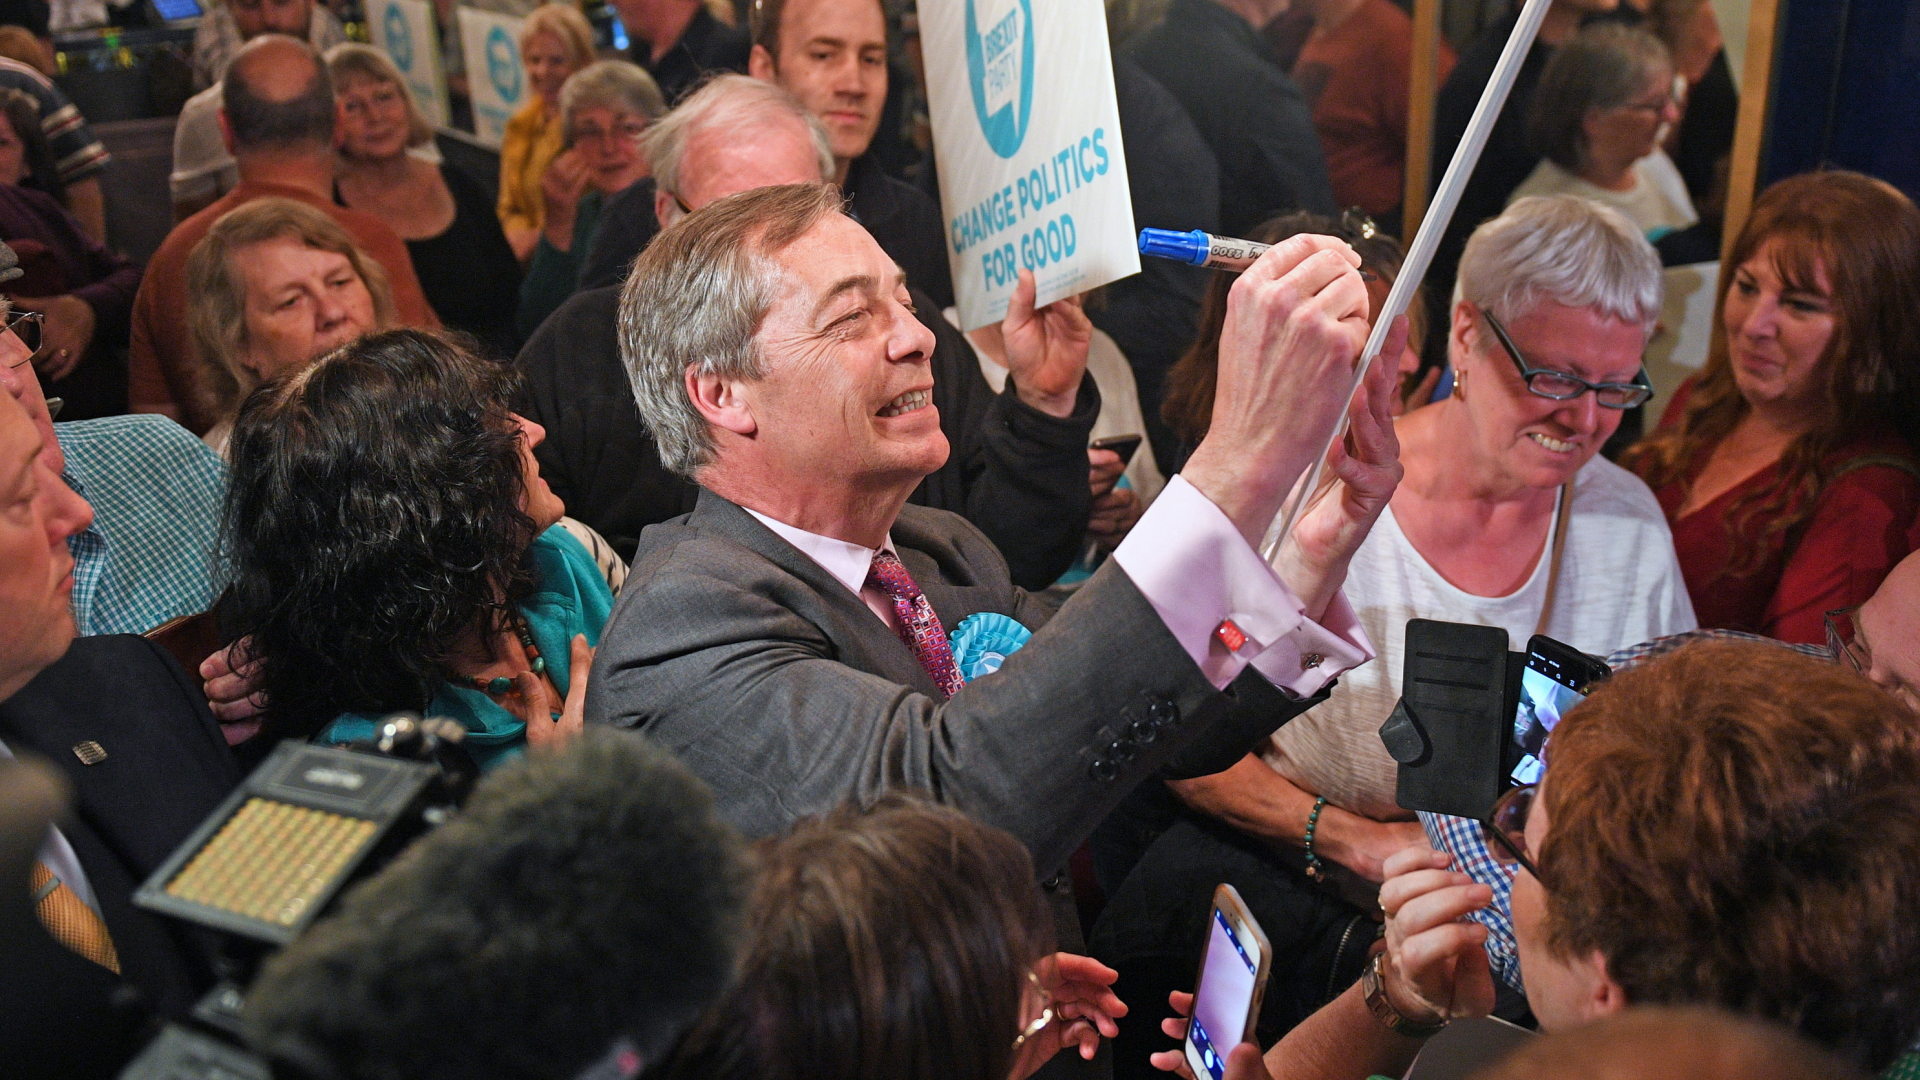 Nigel Farage, EU-Abgeordneter für Großbritannien und Vorsitzender der Brexit-Partei, unterschreibt ein Plakat während einer Wahlkampfveranstaltung.